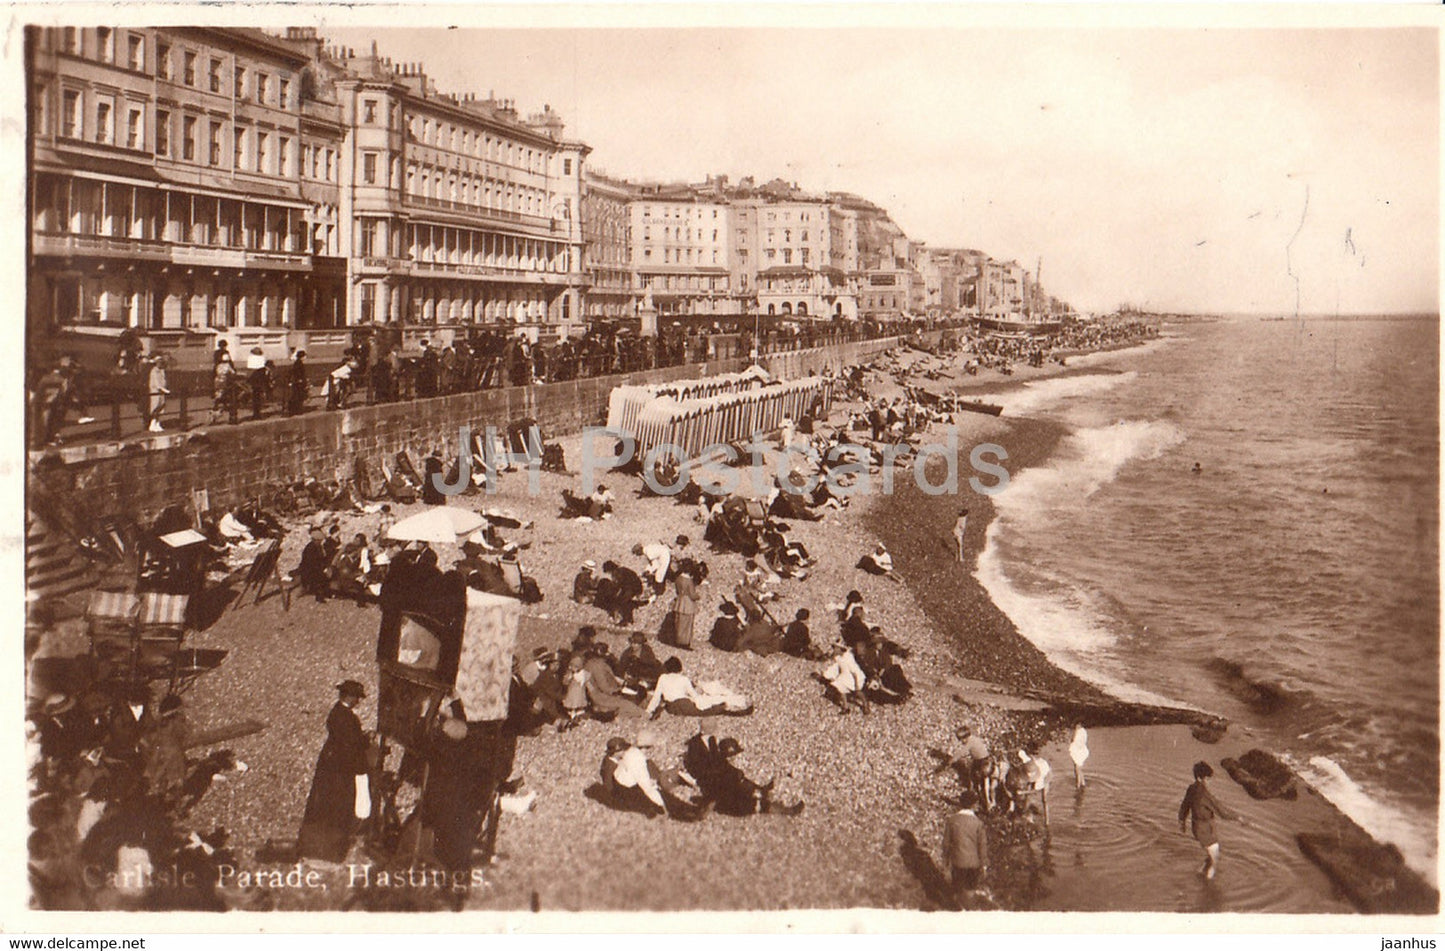 Hastings - Carlisle Parade - old postcard - England - 1925 - United Kingdom - used - JH Postcards